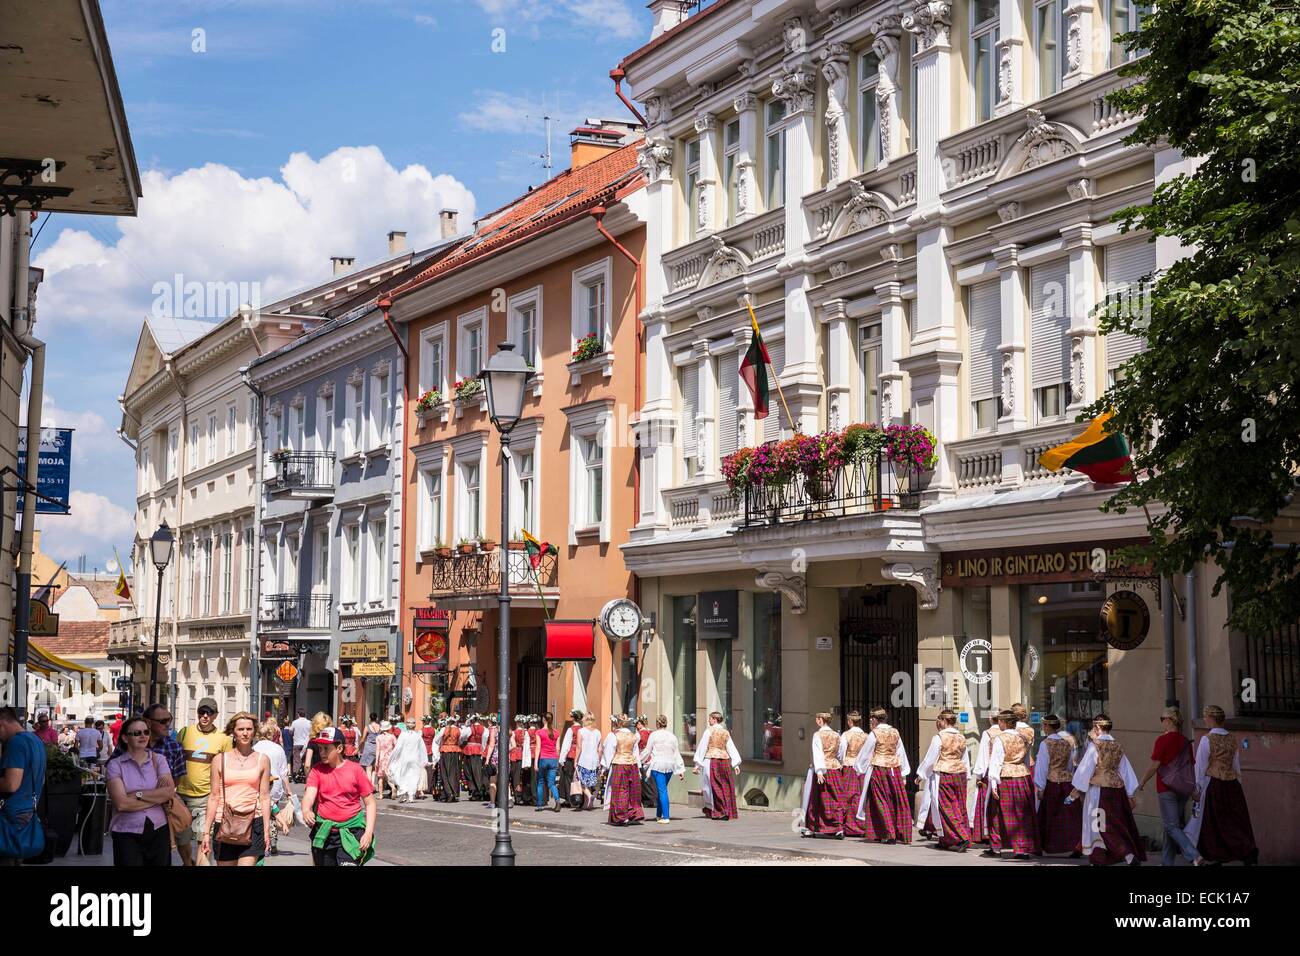 Lituania (Países Bálticos), Vilna, el centro histórico catalogado como Patrimonio de la Humanidad por la UNESCO, calle Didzioji Gatve desfile de un grupo folclórico con motivo de la celebración de la coronación del rey Mindaugas y Festival de la canción Foto de stock